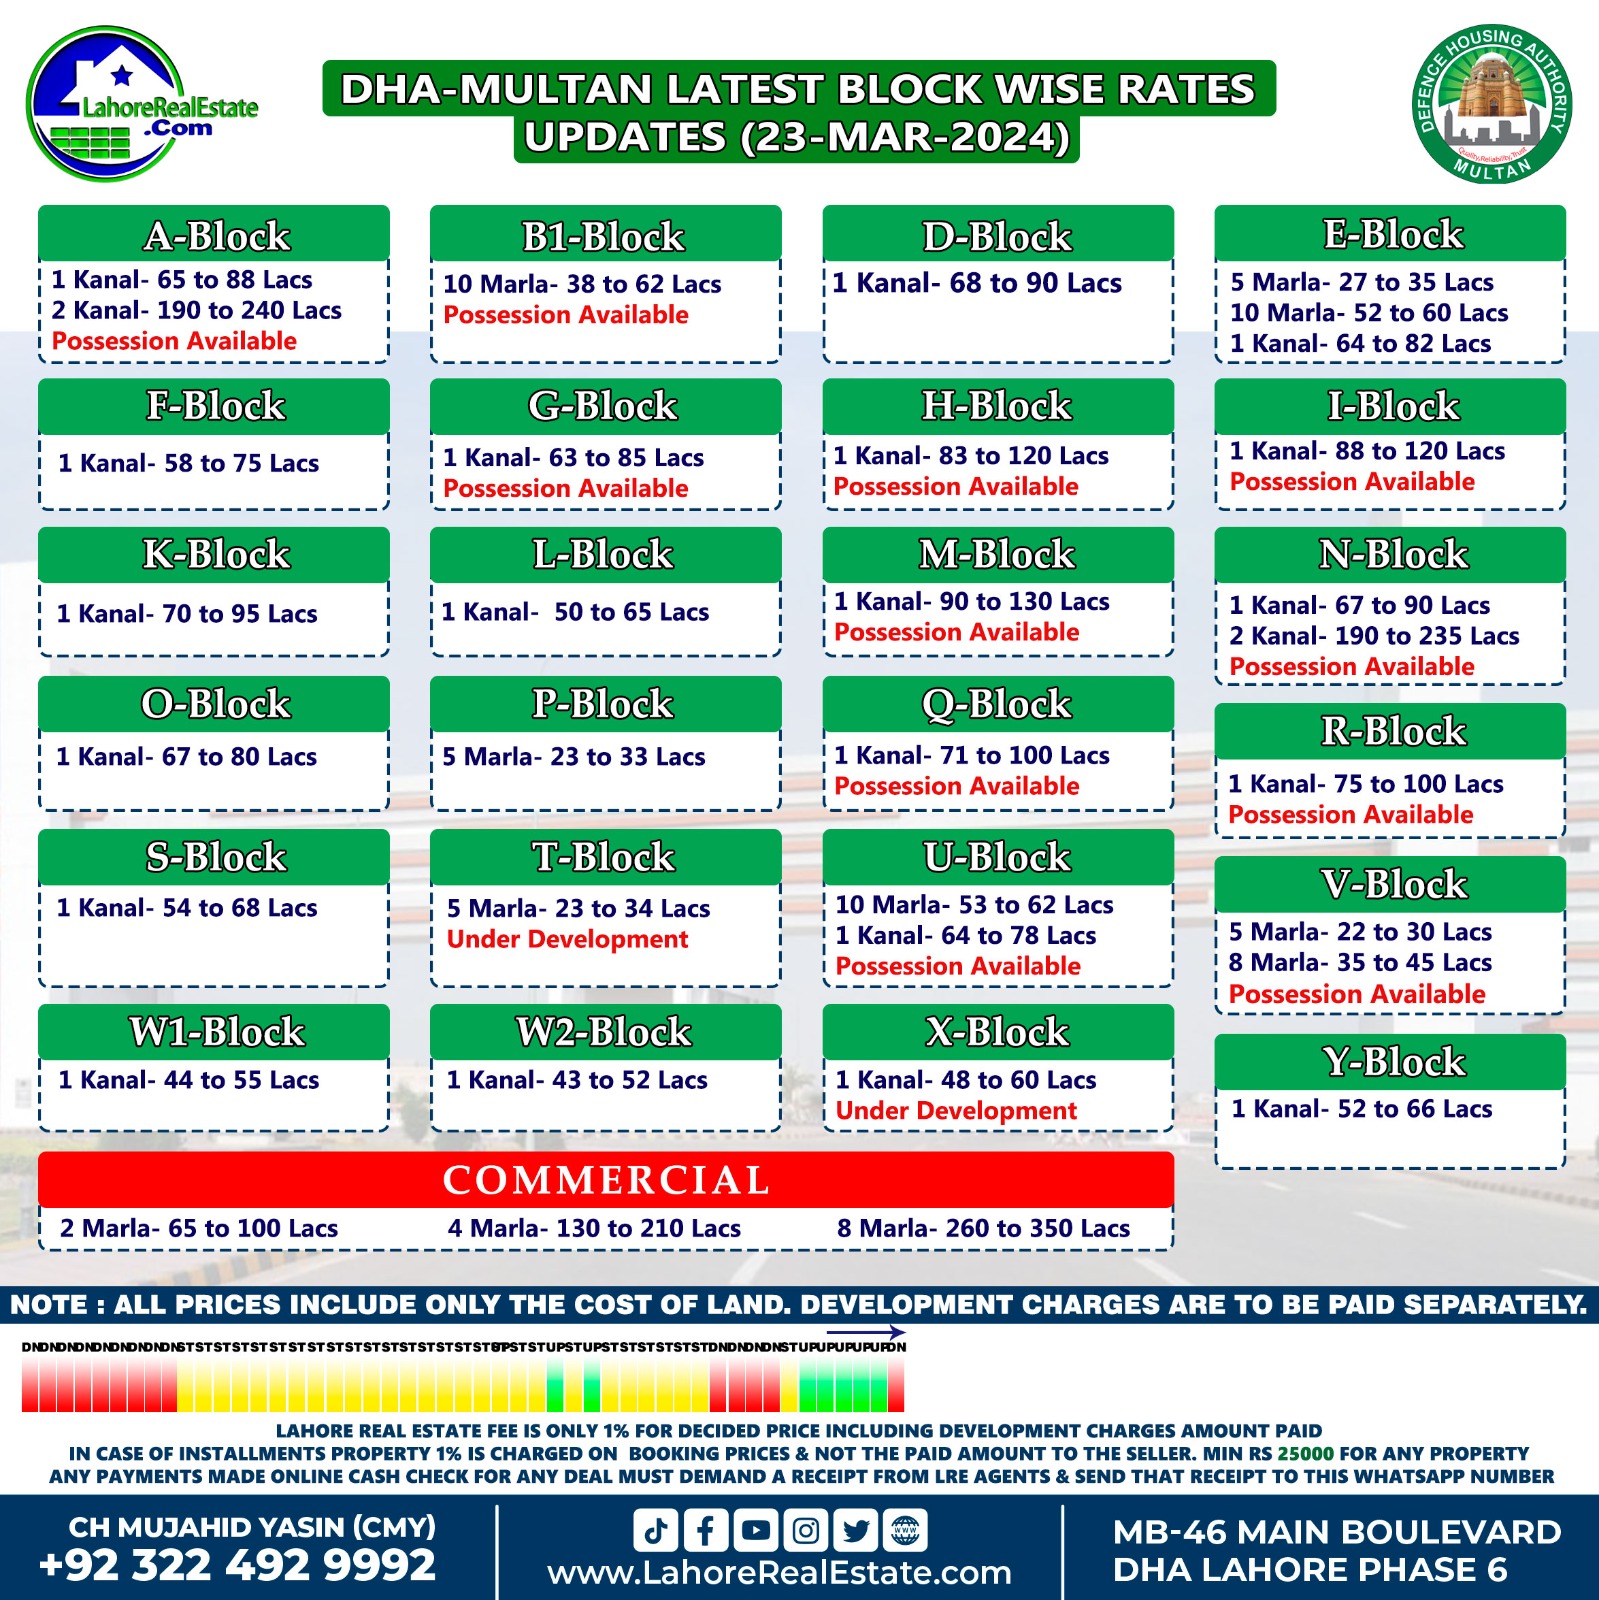 DHA Multan Plot Prices Update March 25, 2024